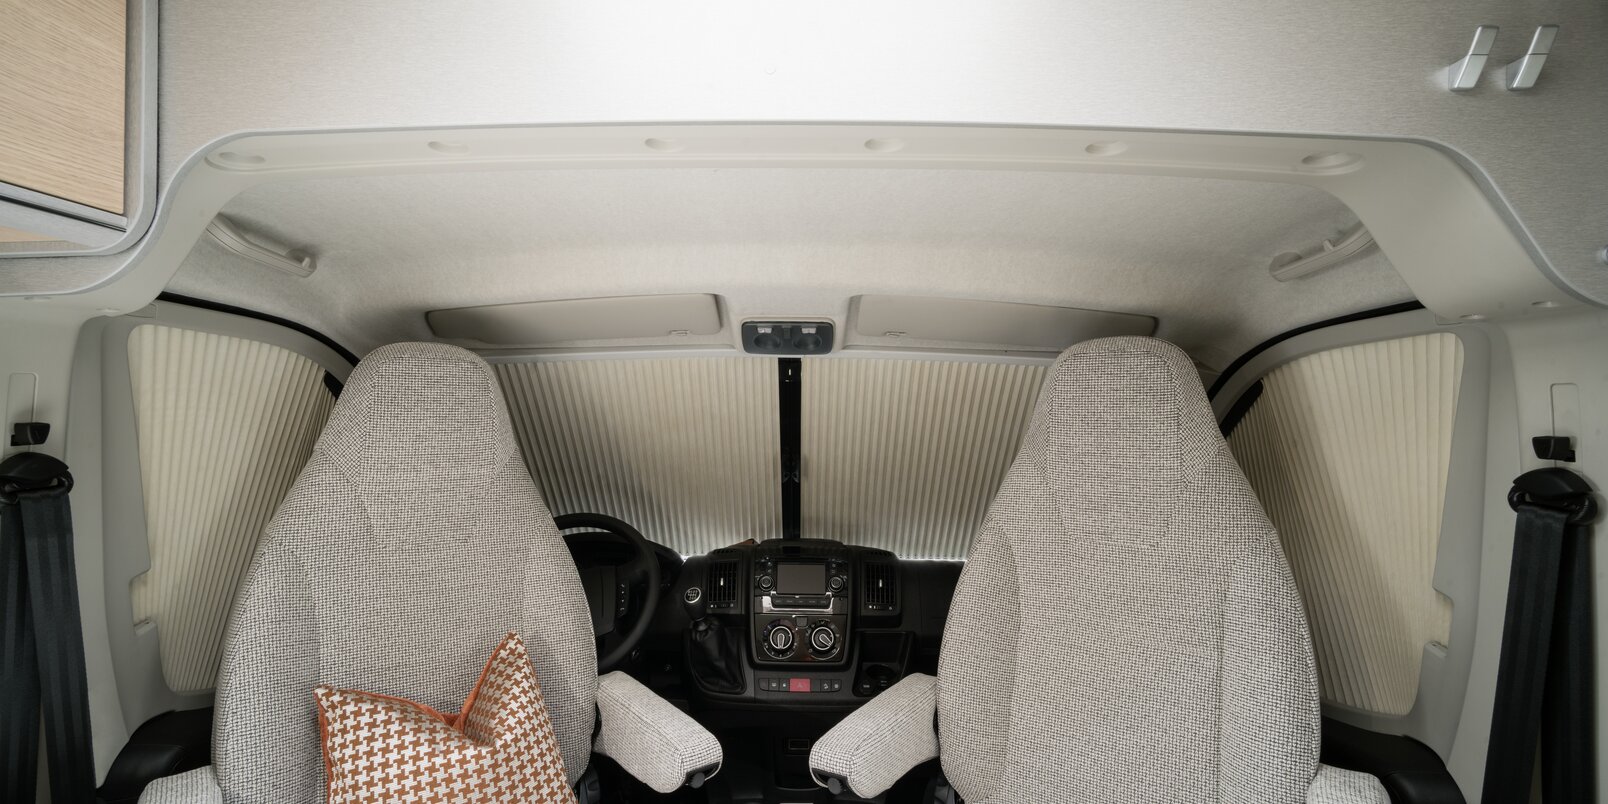 Fiat-bestuurderscabine met bestuurdersstoelen, sierkussens, dashboard en vouwgordijnsysteem in de HYMER-camper